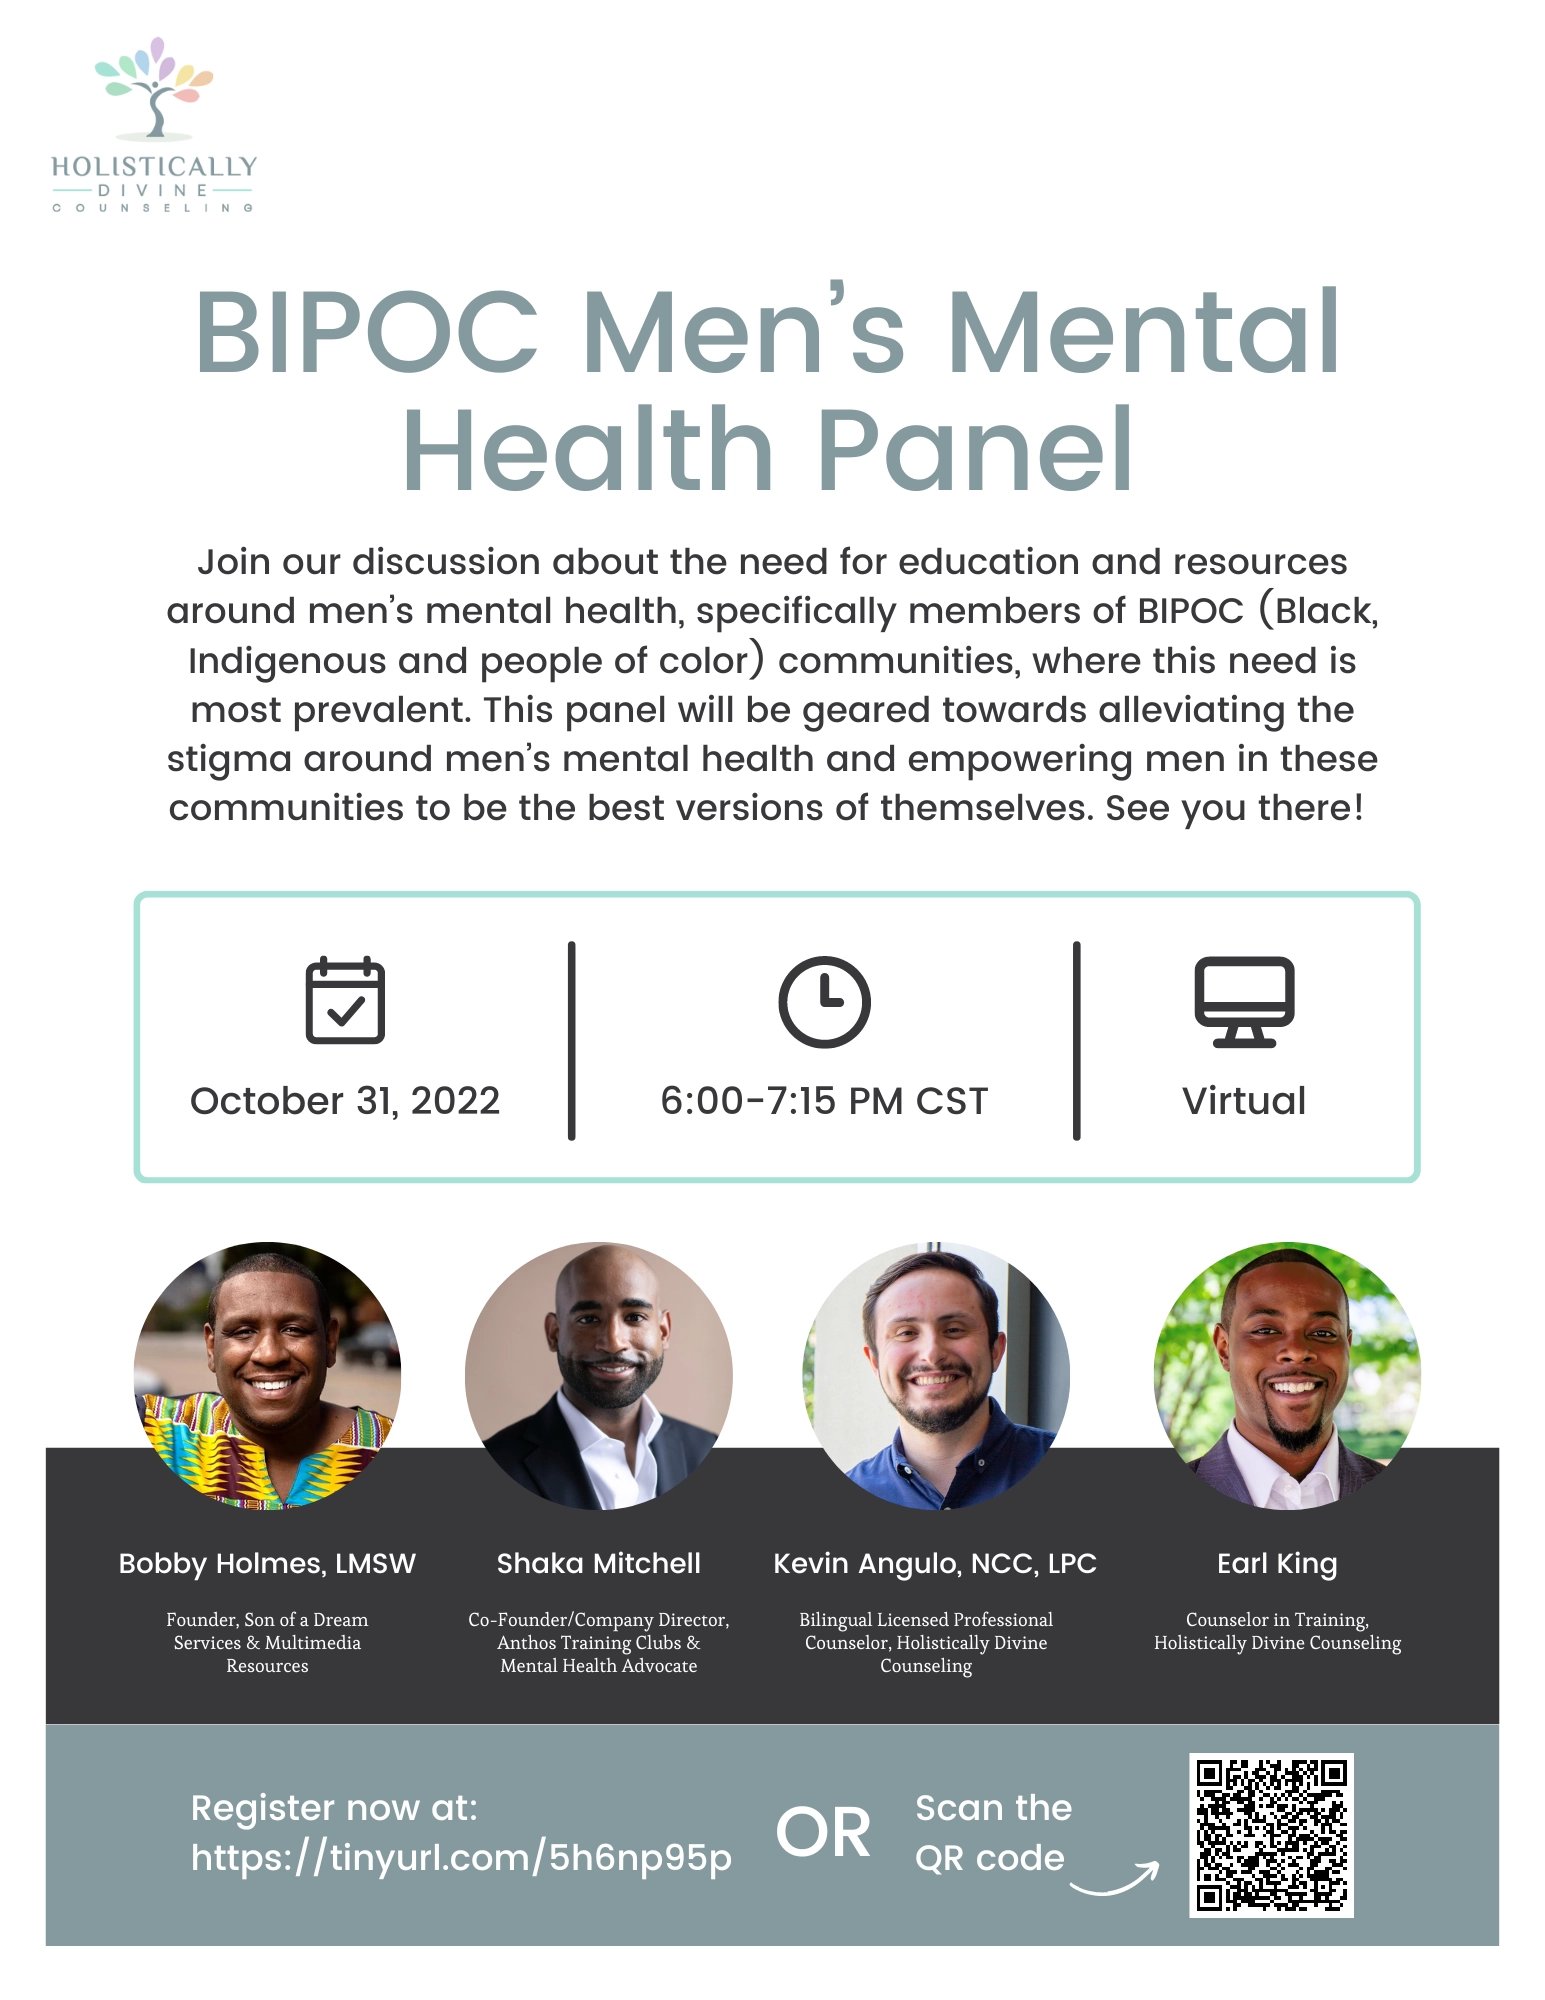 BIPOC Men's Mental Health Panel